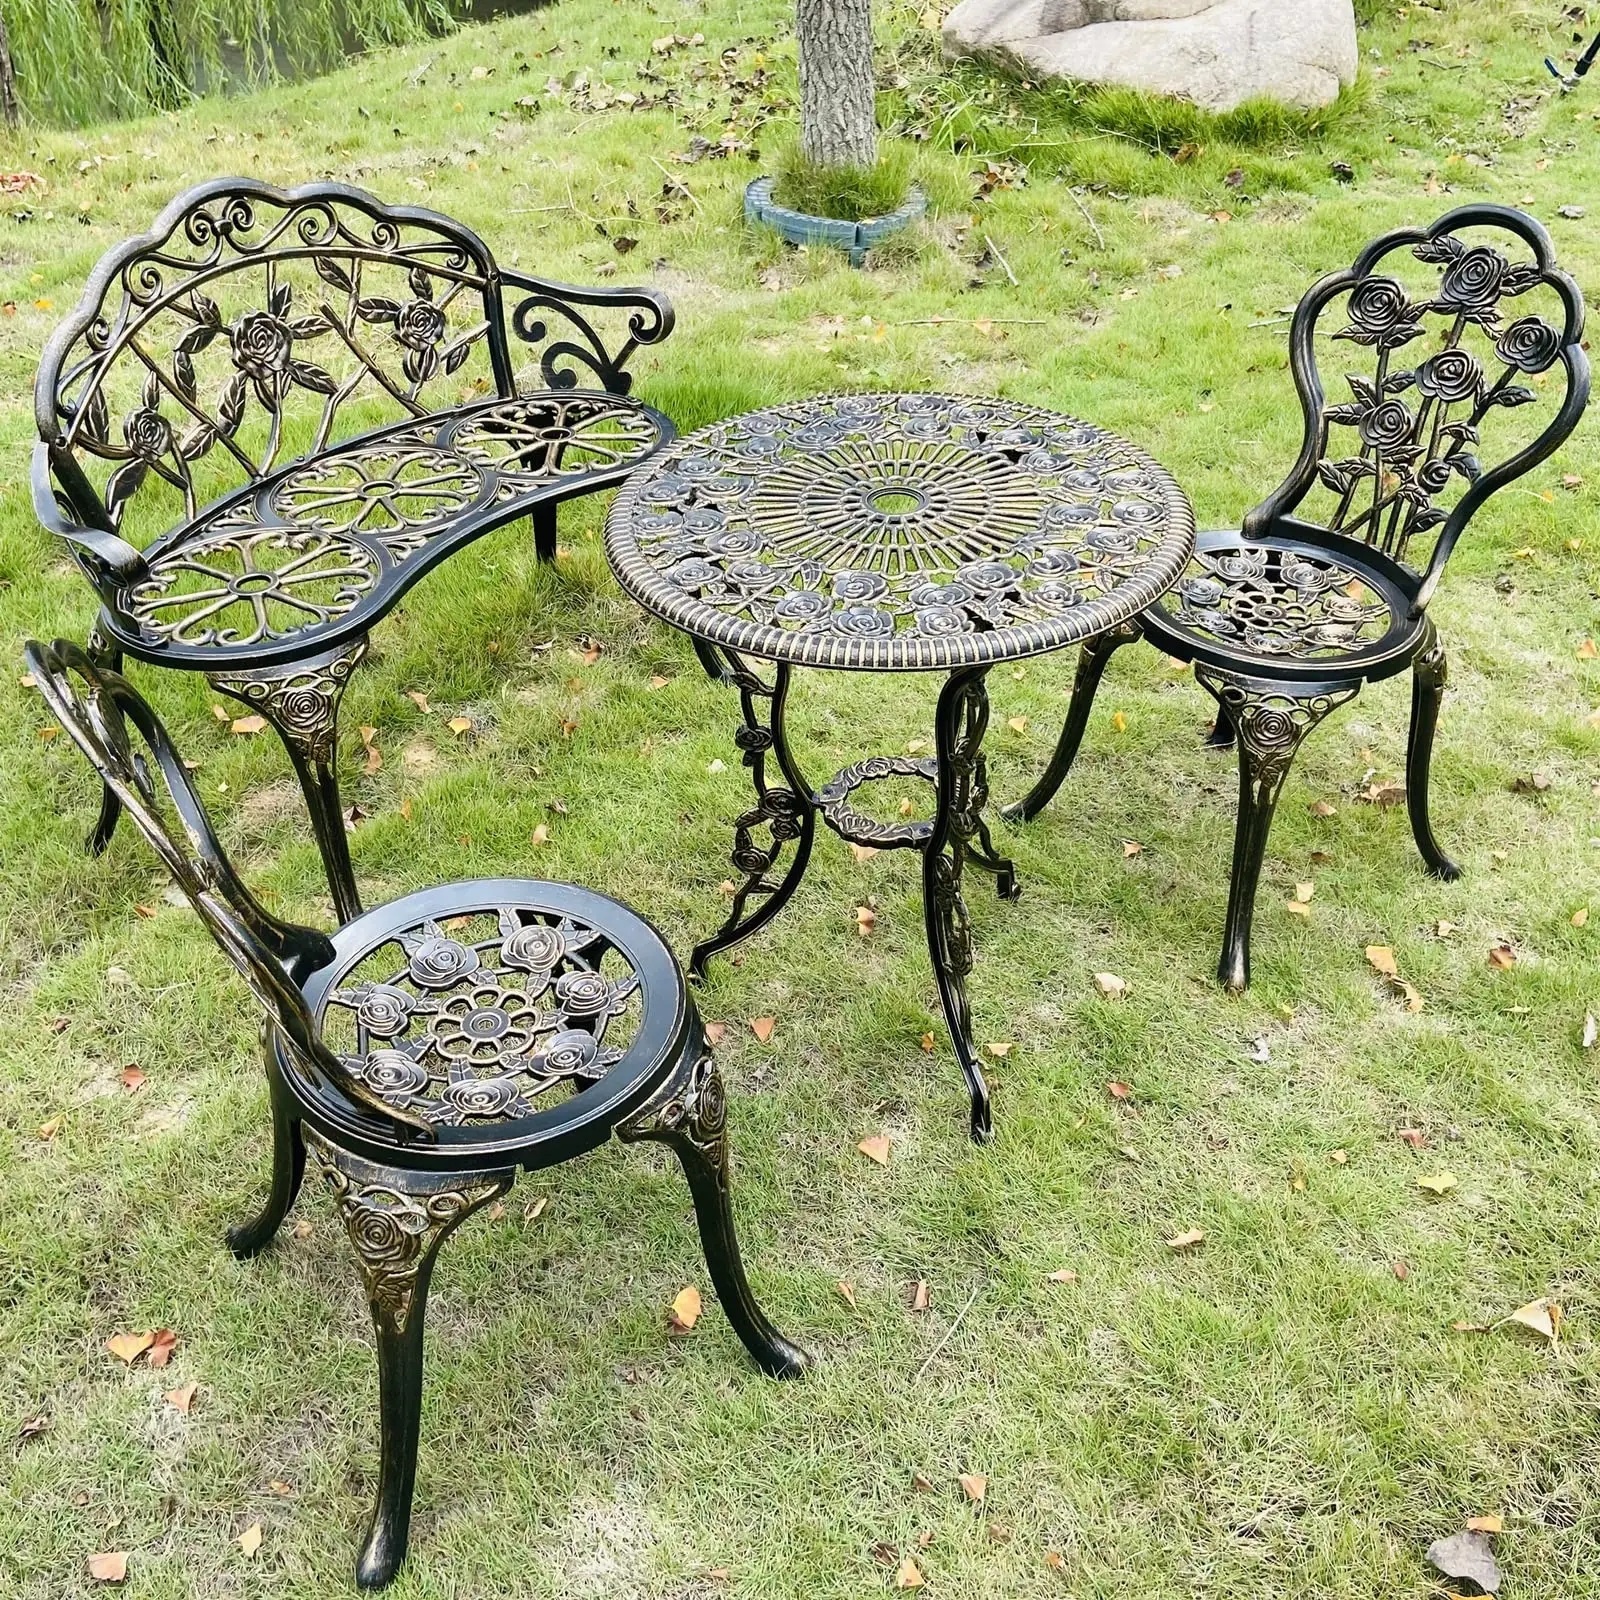 Garten bank aus Aluminium guss Set Balkon tische und Stühle Tischs tühle und 1 Bank, Metall, Bistro anzug